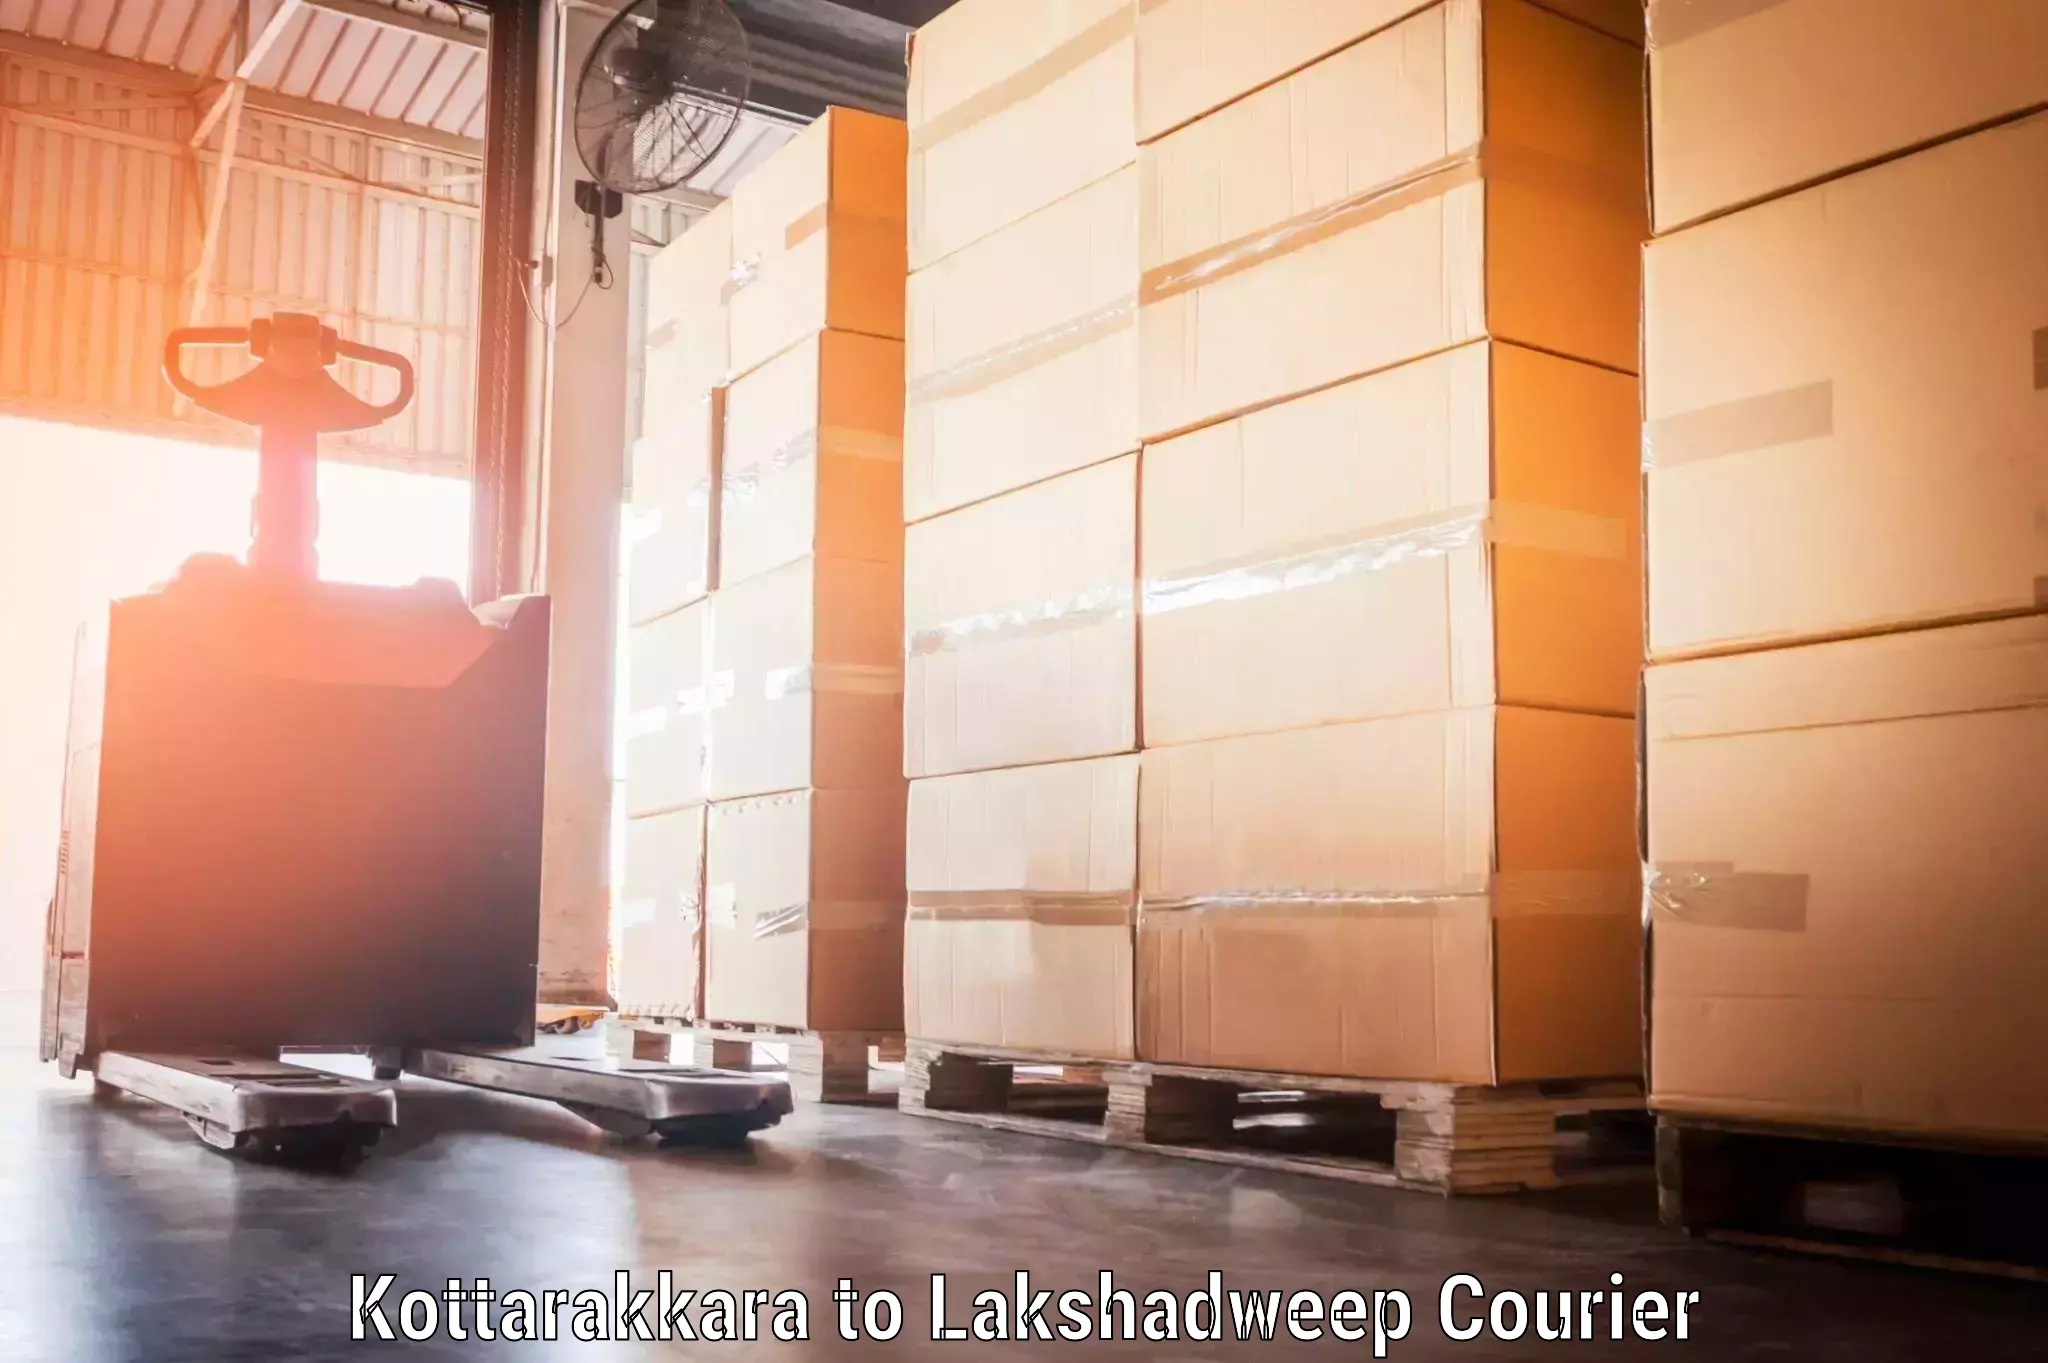 Baggage shipping schedule in Kottarakkara to Lakshadweep